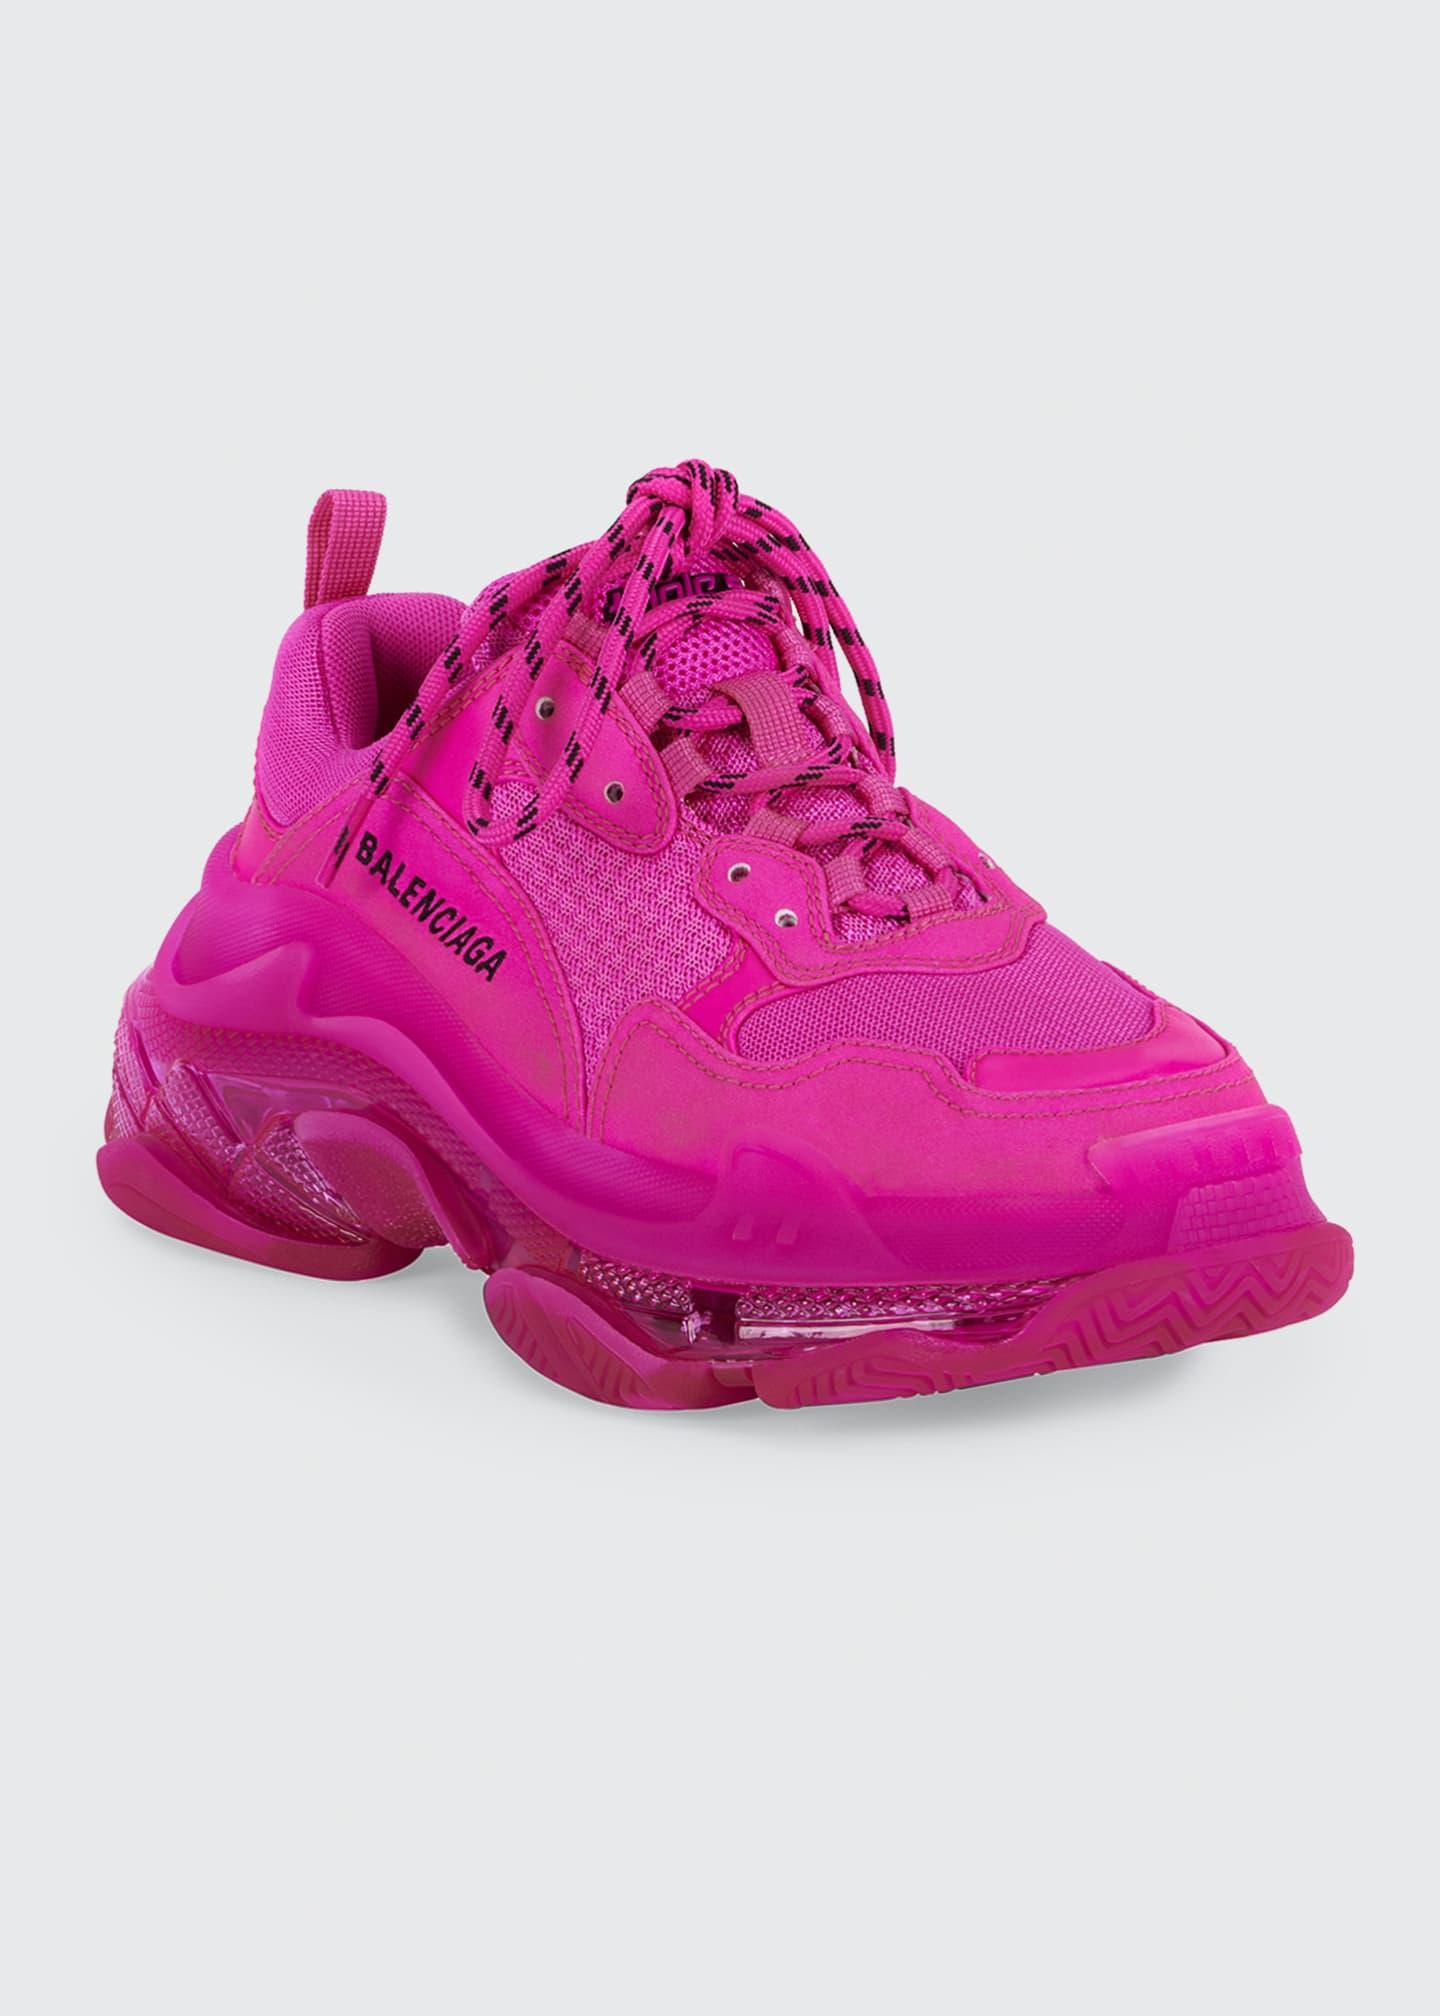 balenciaga pink sneakers